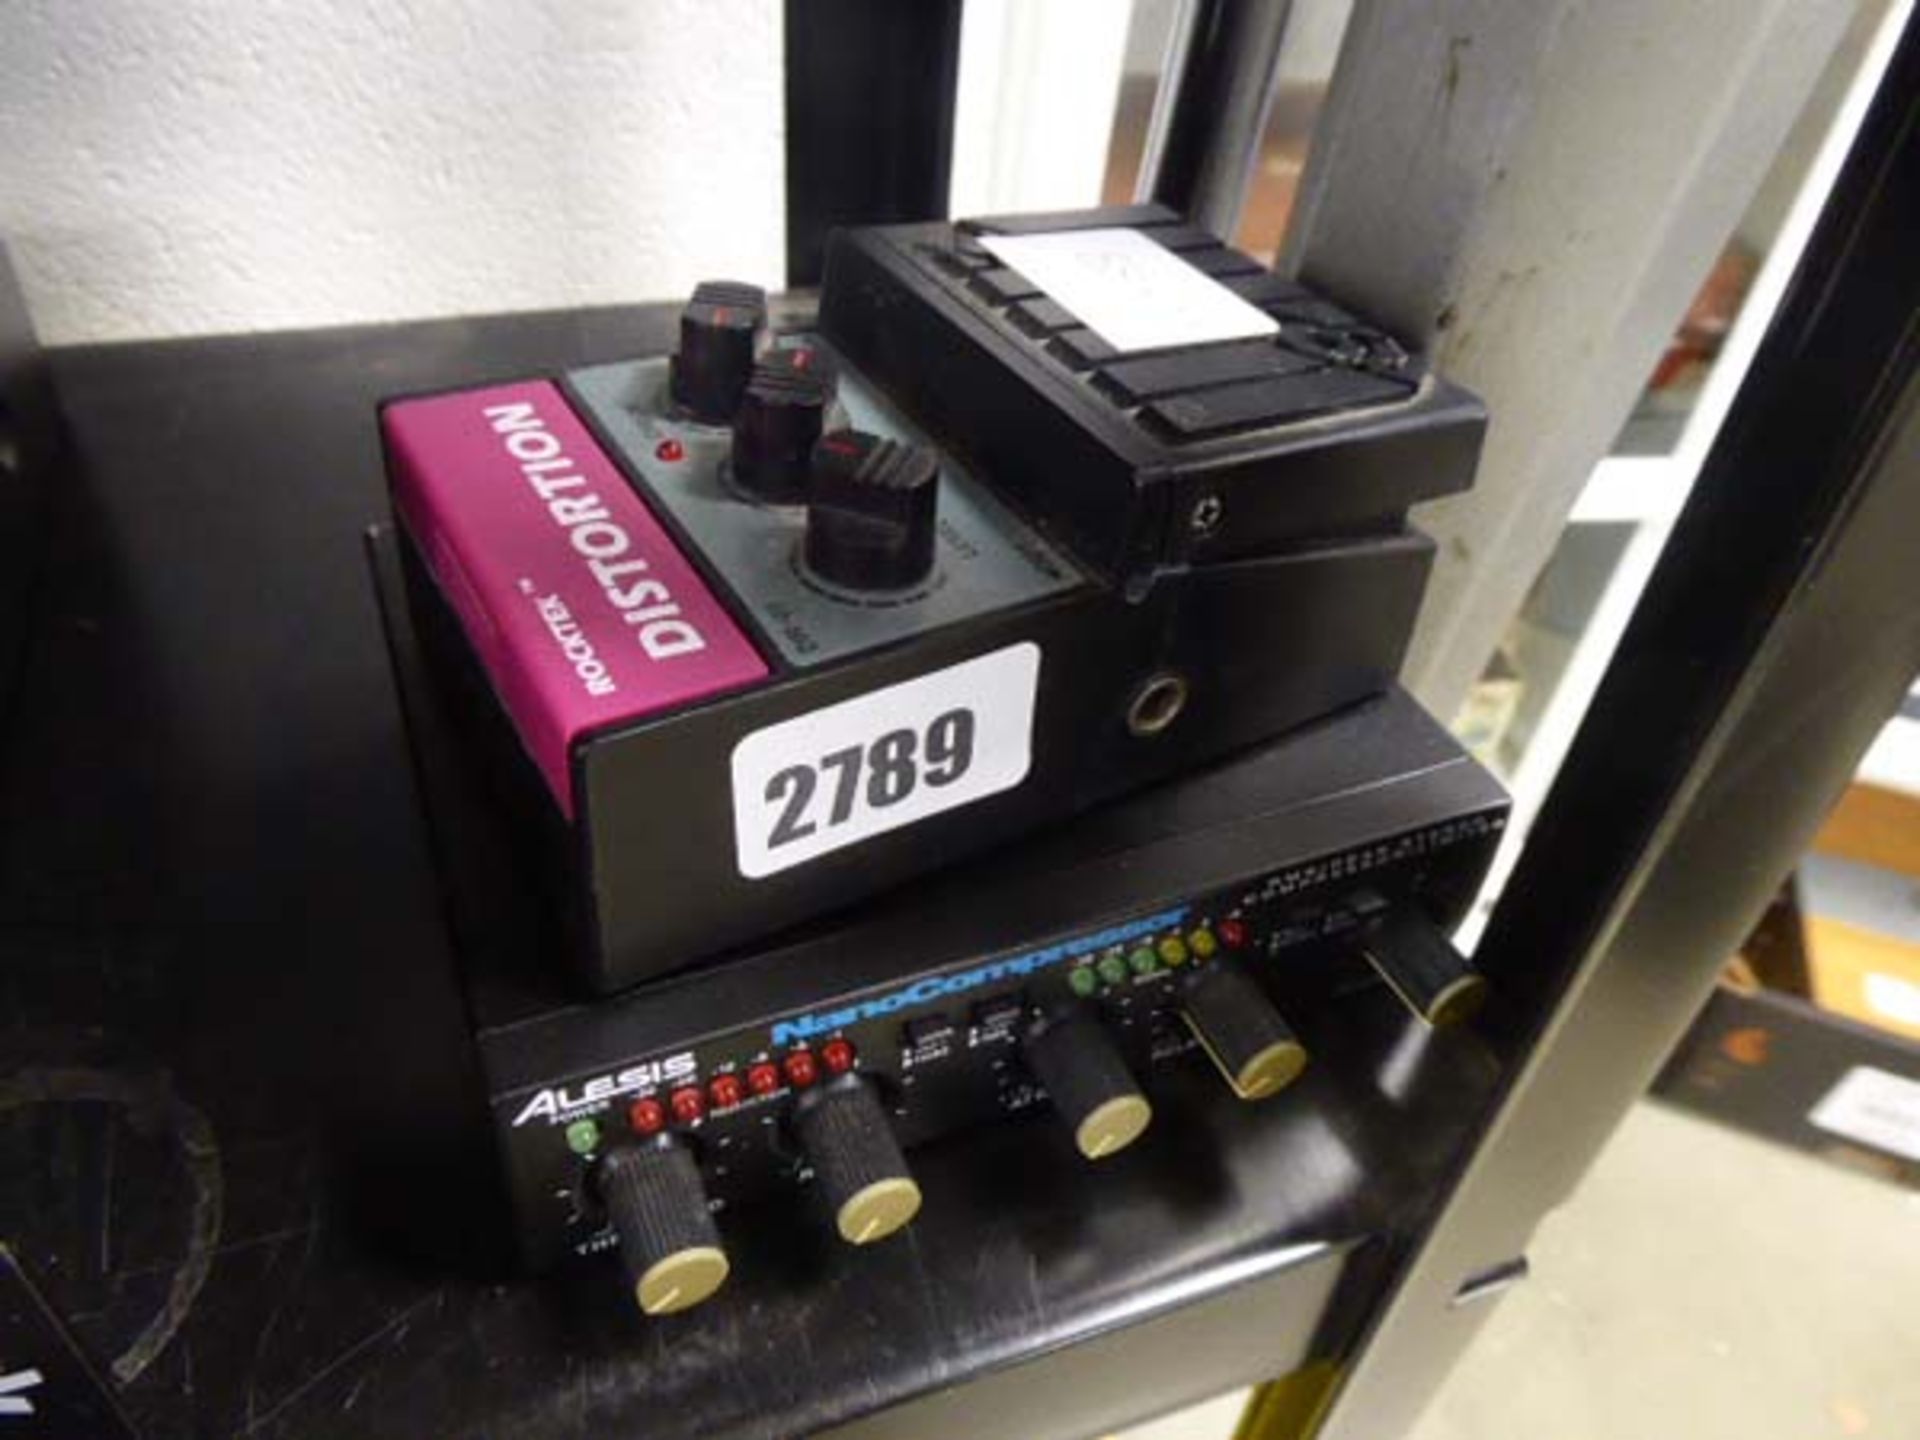 Rocktek distortion pedal together with nano compressor